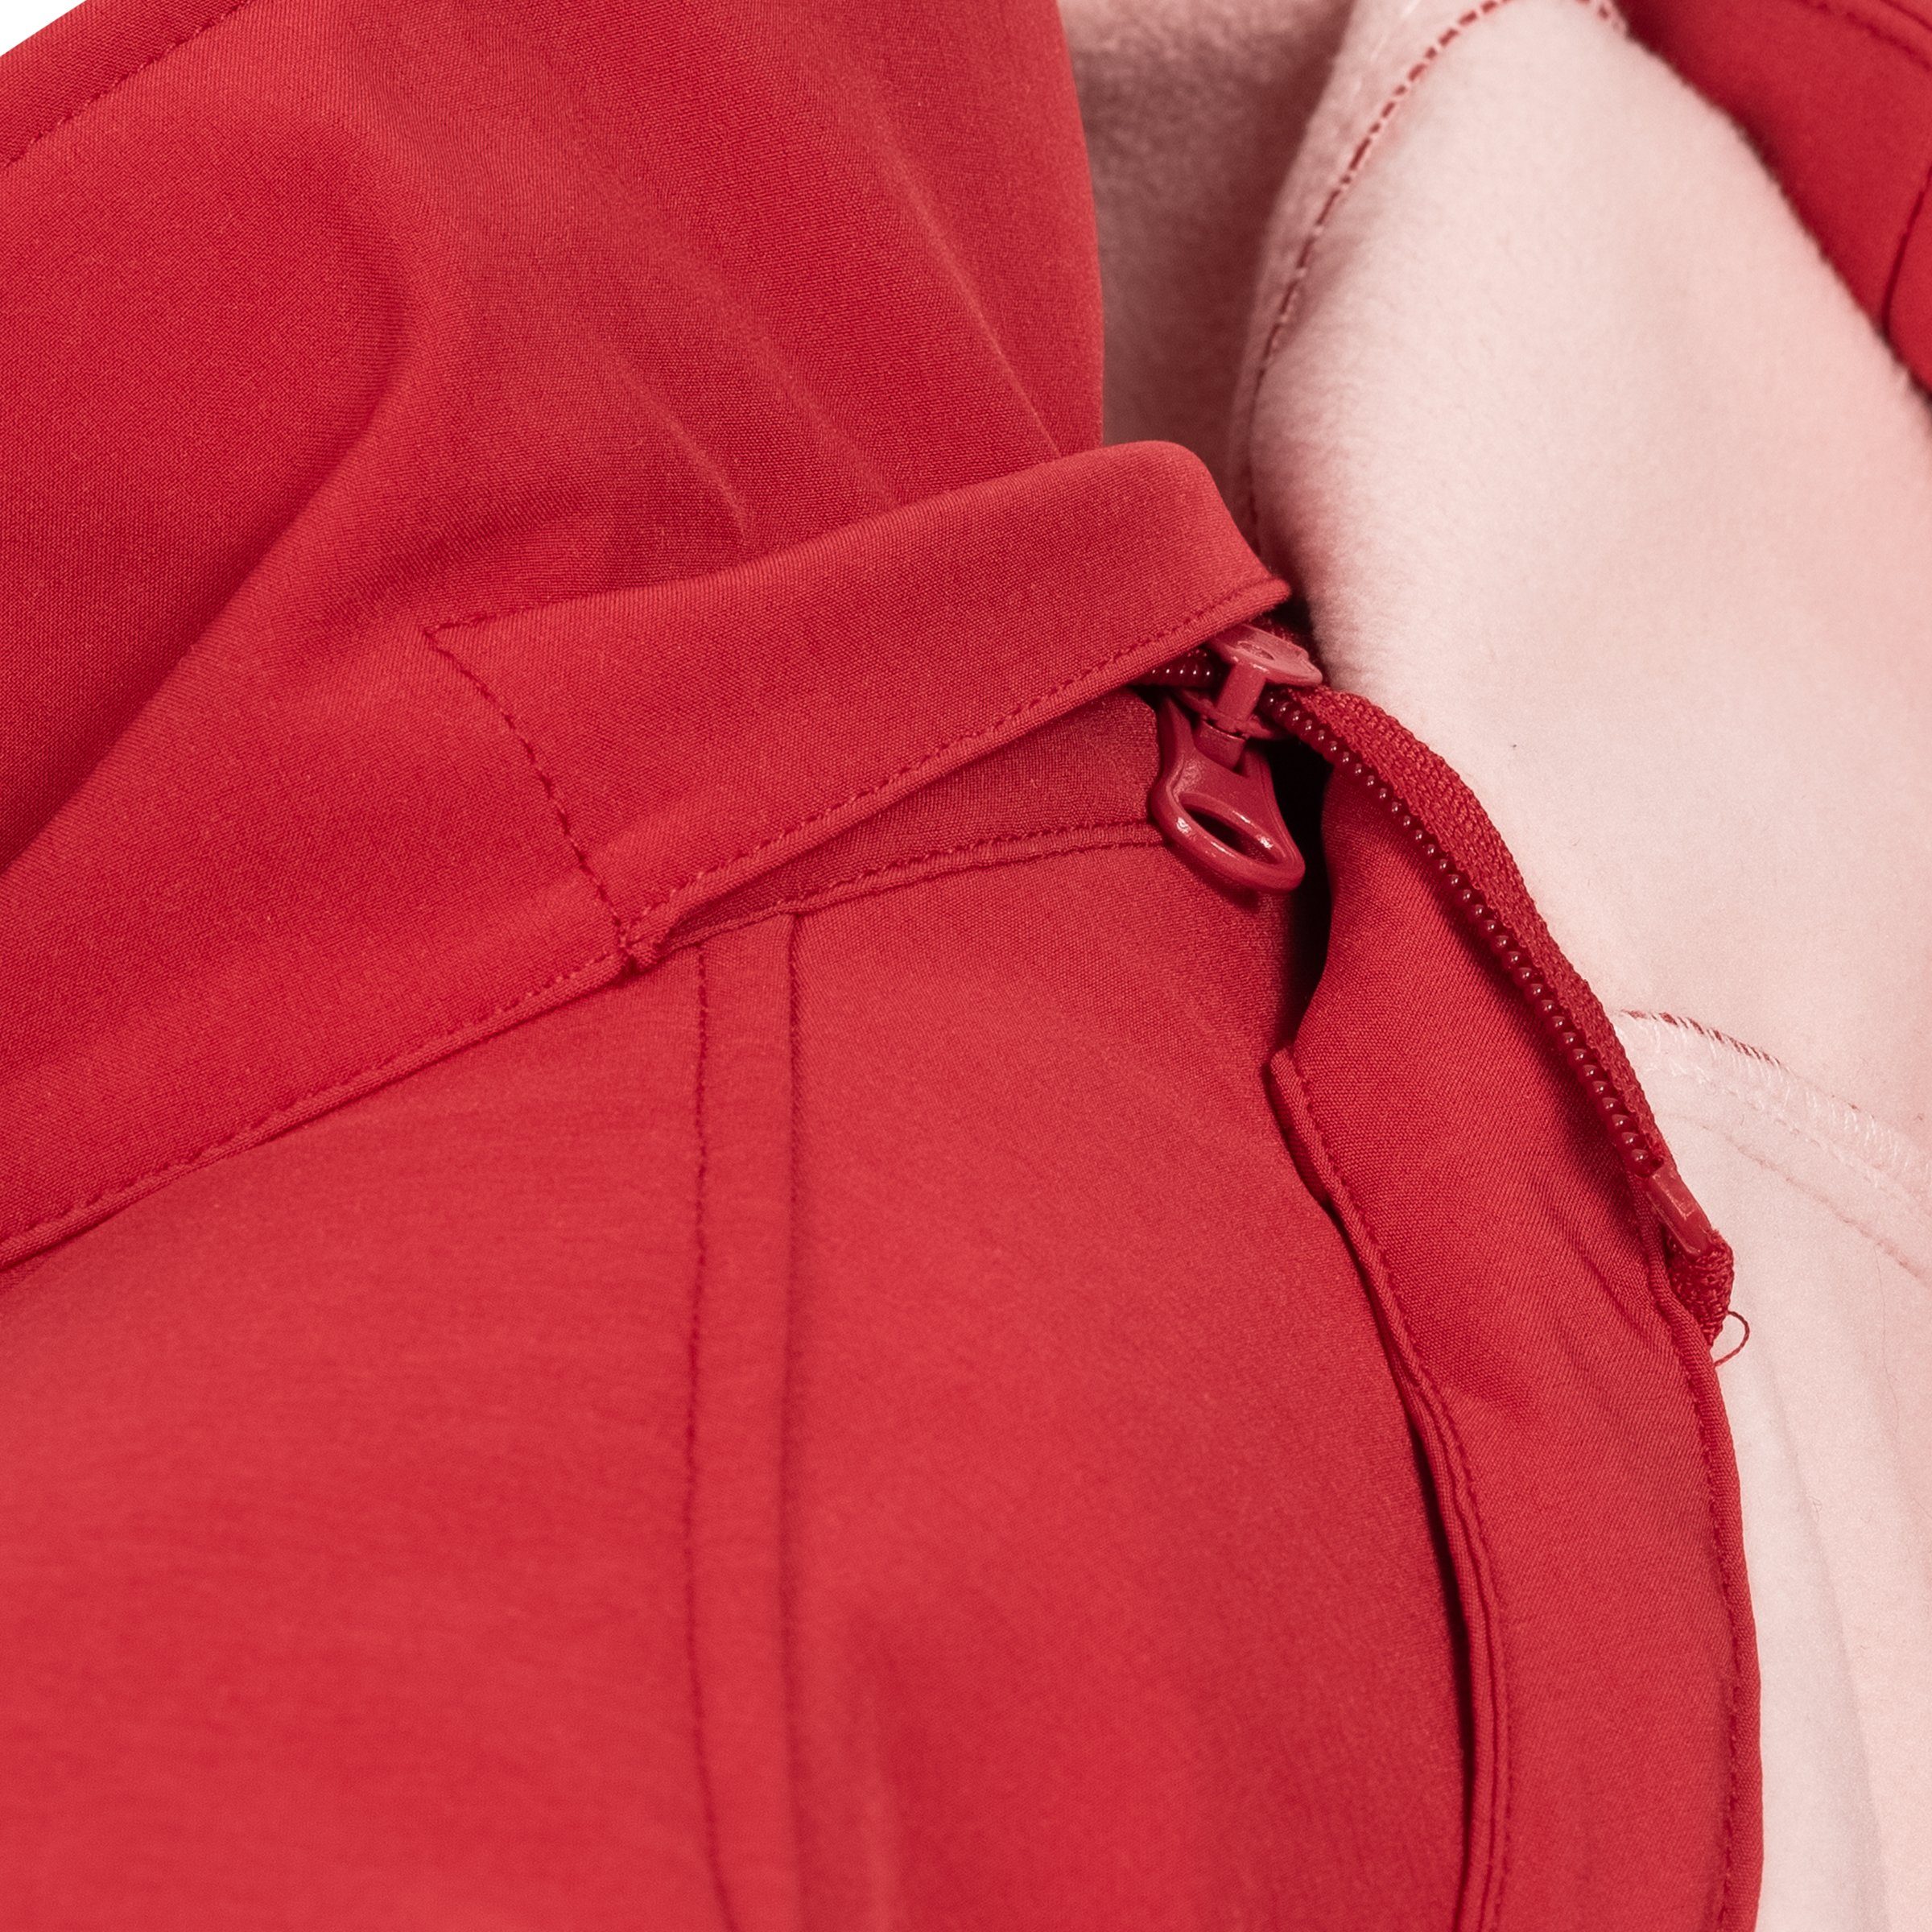 erhältlich auch Active mit CS Größen Kapuze, #ankerglutfreude Großen WOMEN DEPROC abnehmbarer in red Softshelljacke